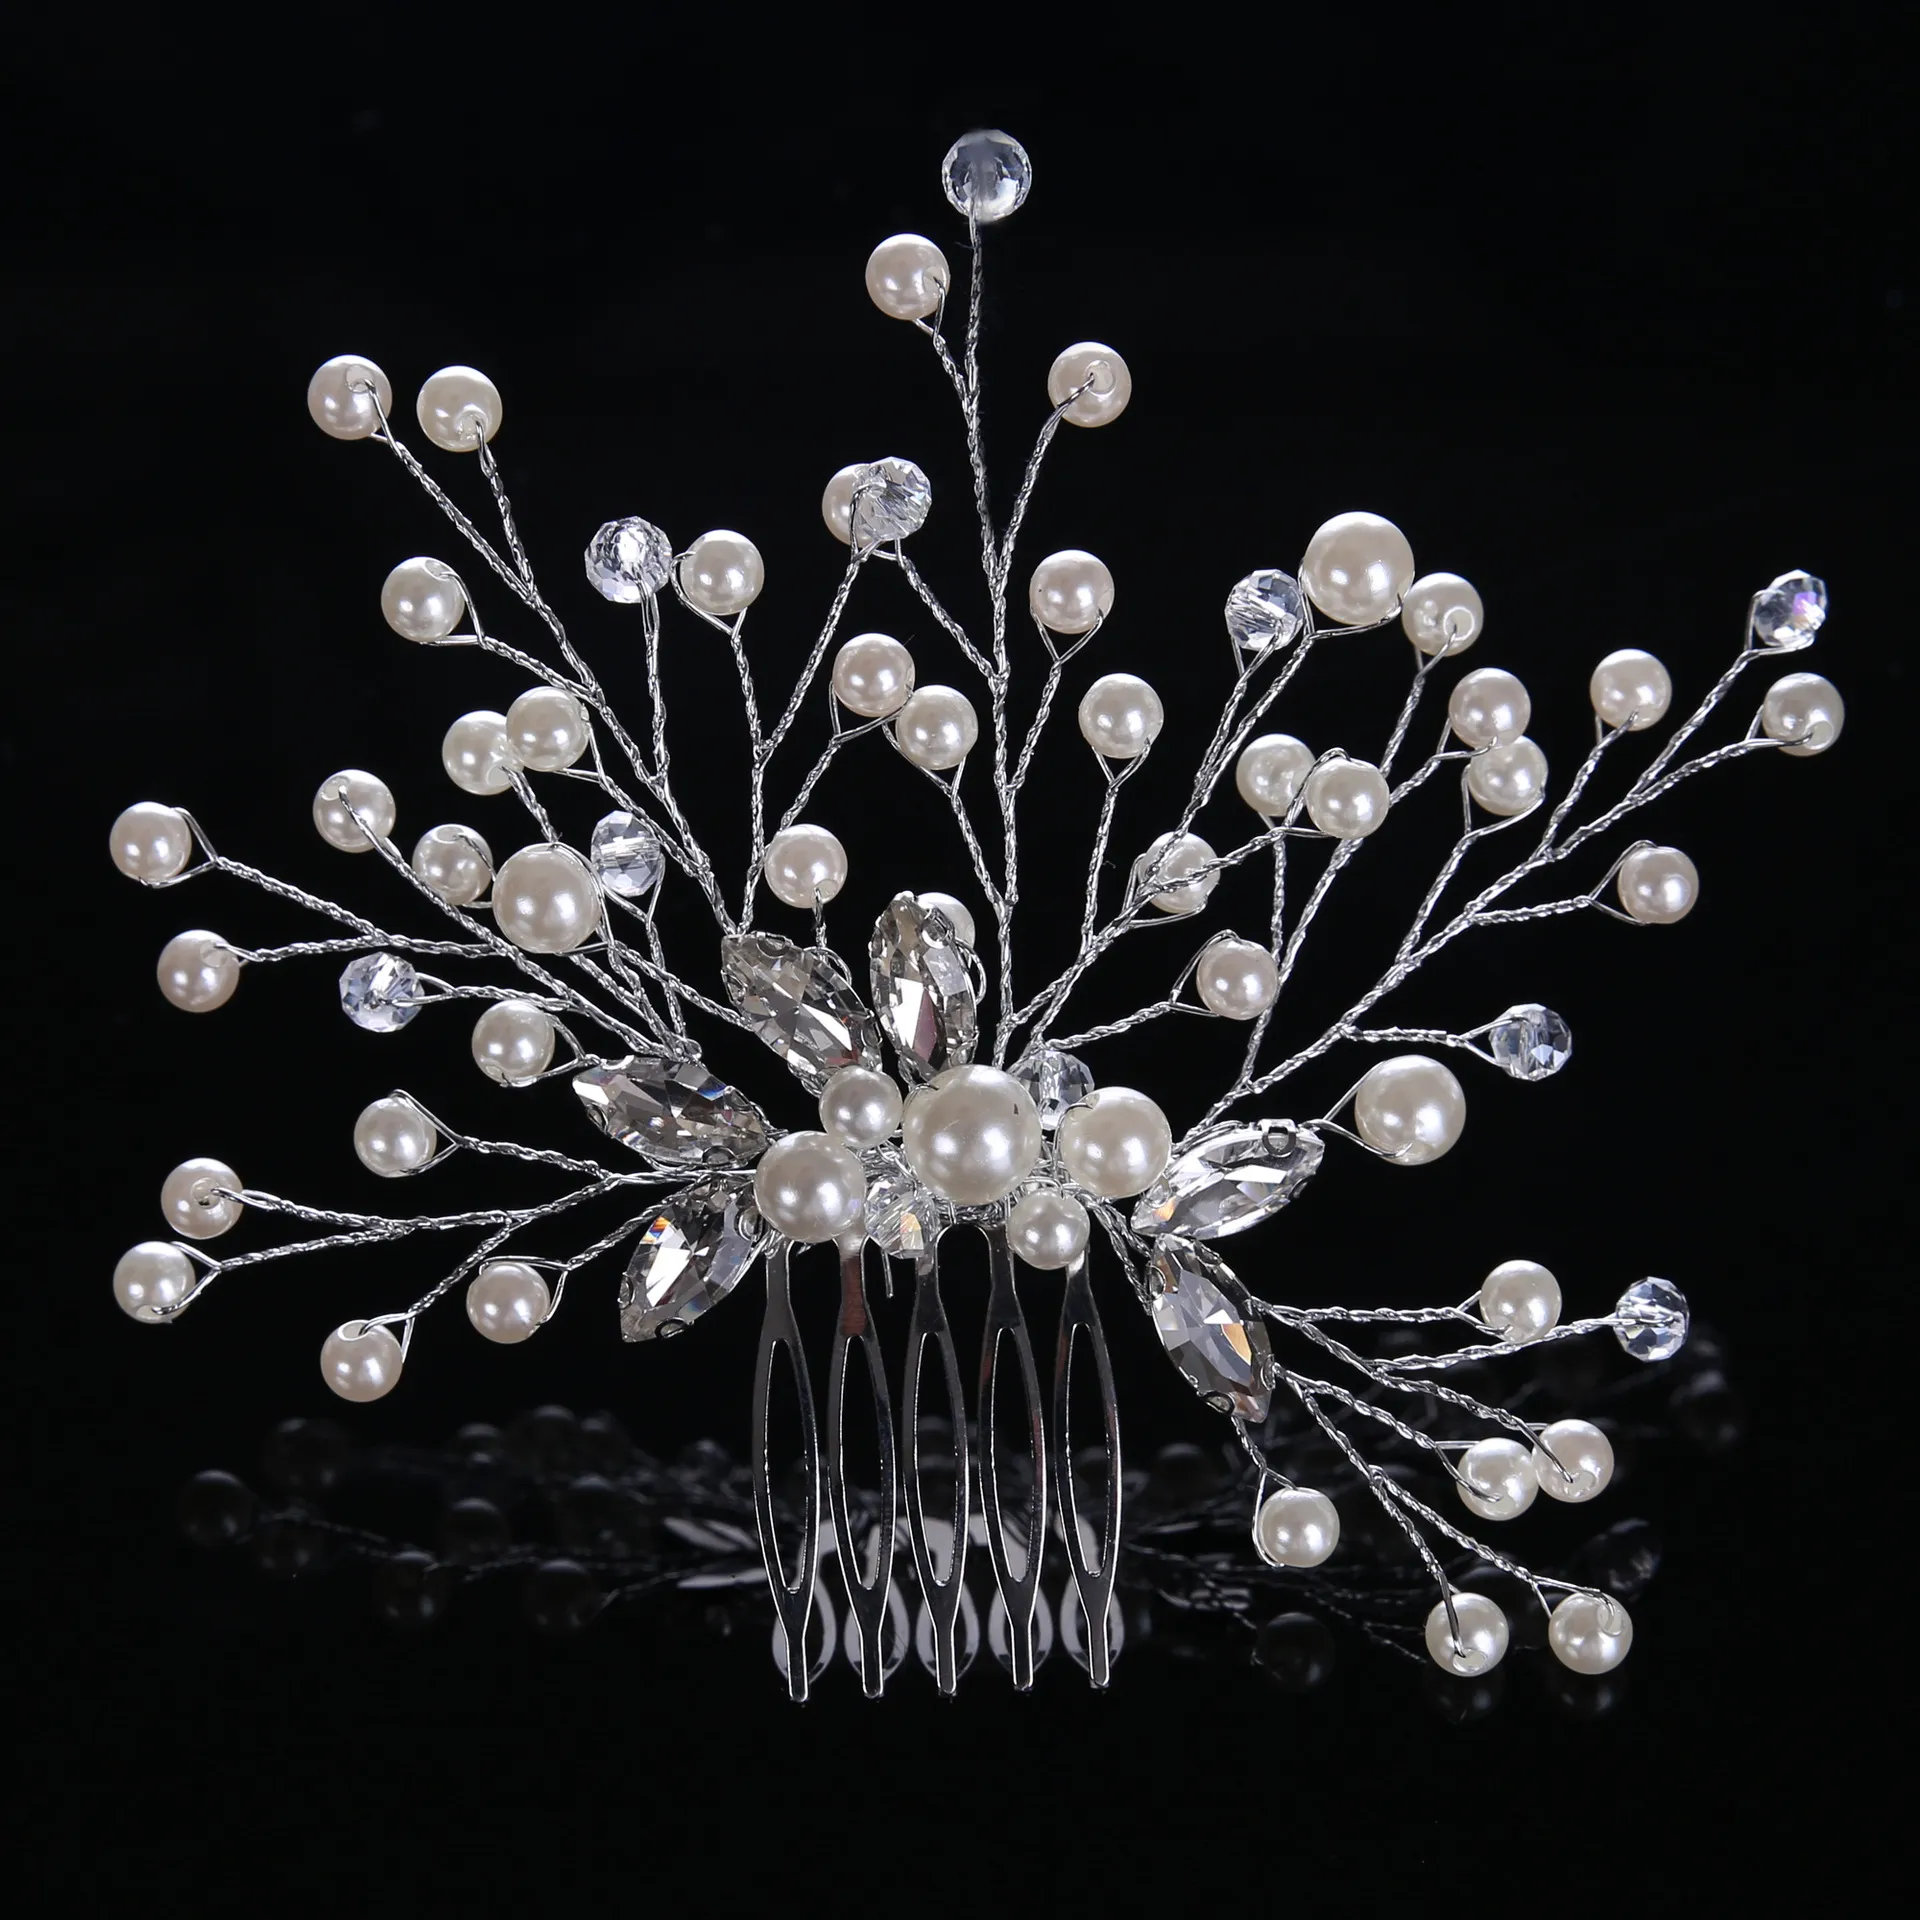 Coiffes accessoires de mariage féminins argent perle cristal bride bande de fleur de fleur band femelles bijoux de cheveux nuptiale